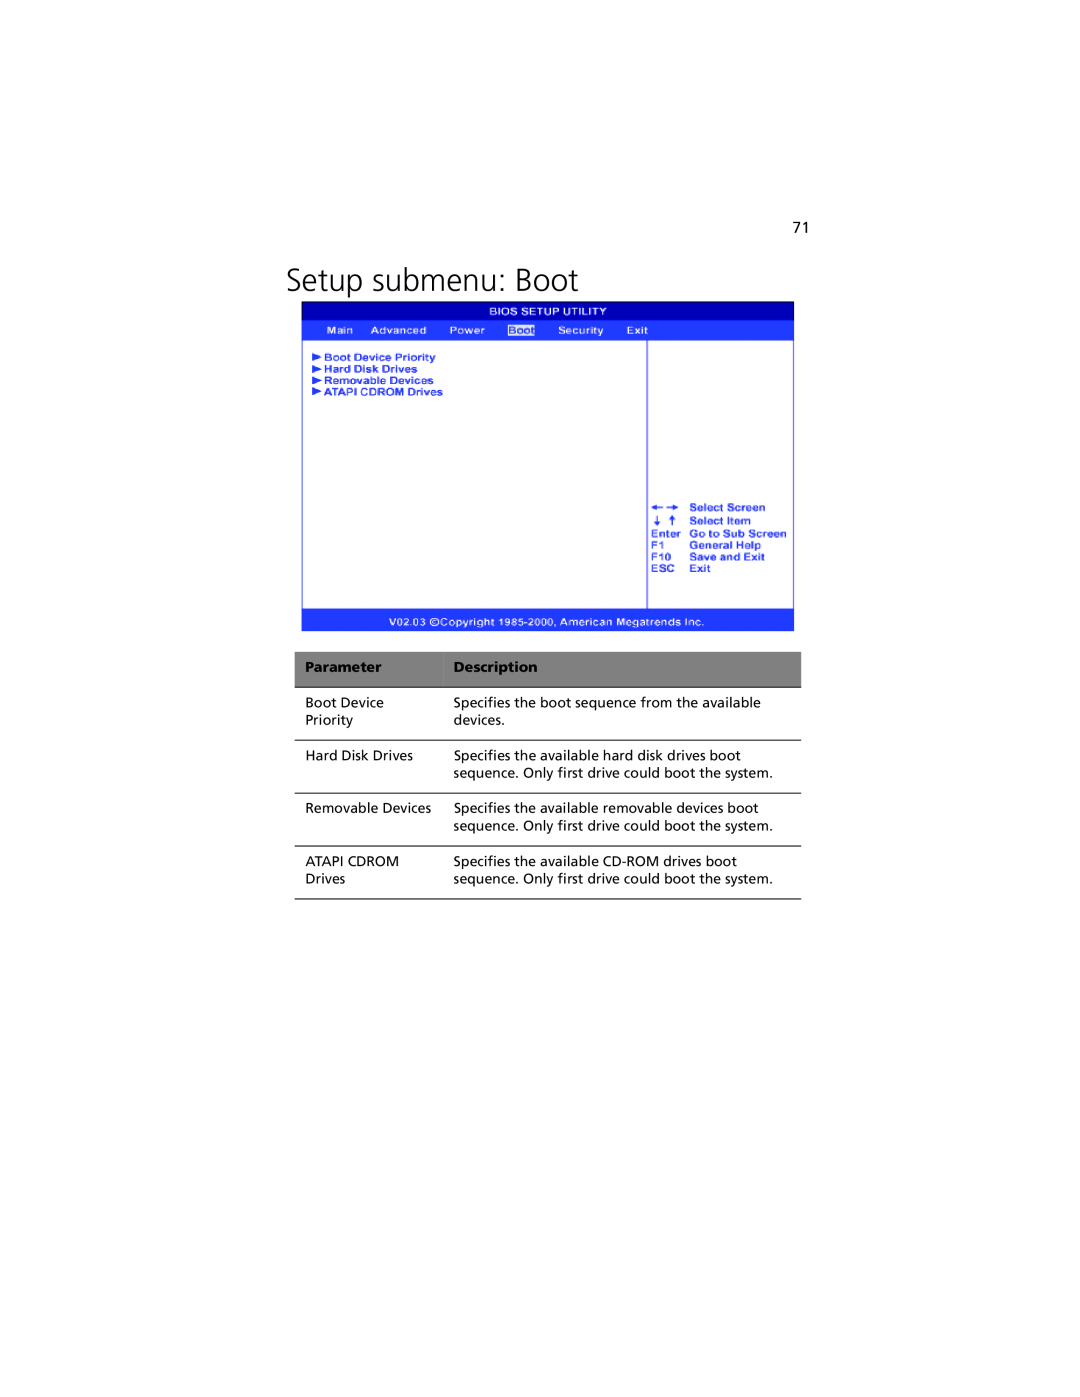 Acer G301 manual Setup submenu Boot, Parameter, Description 